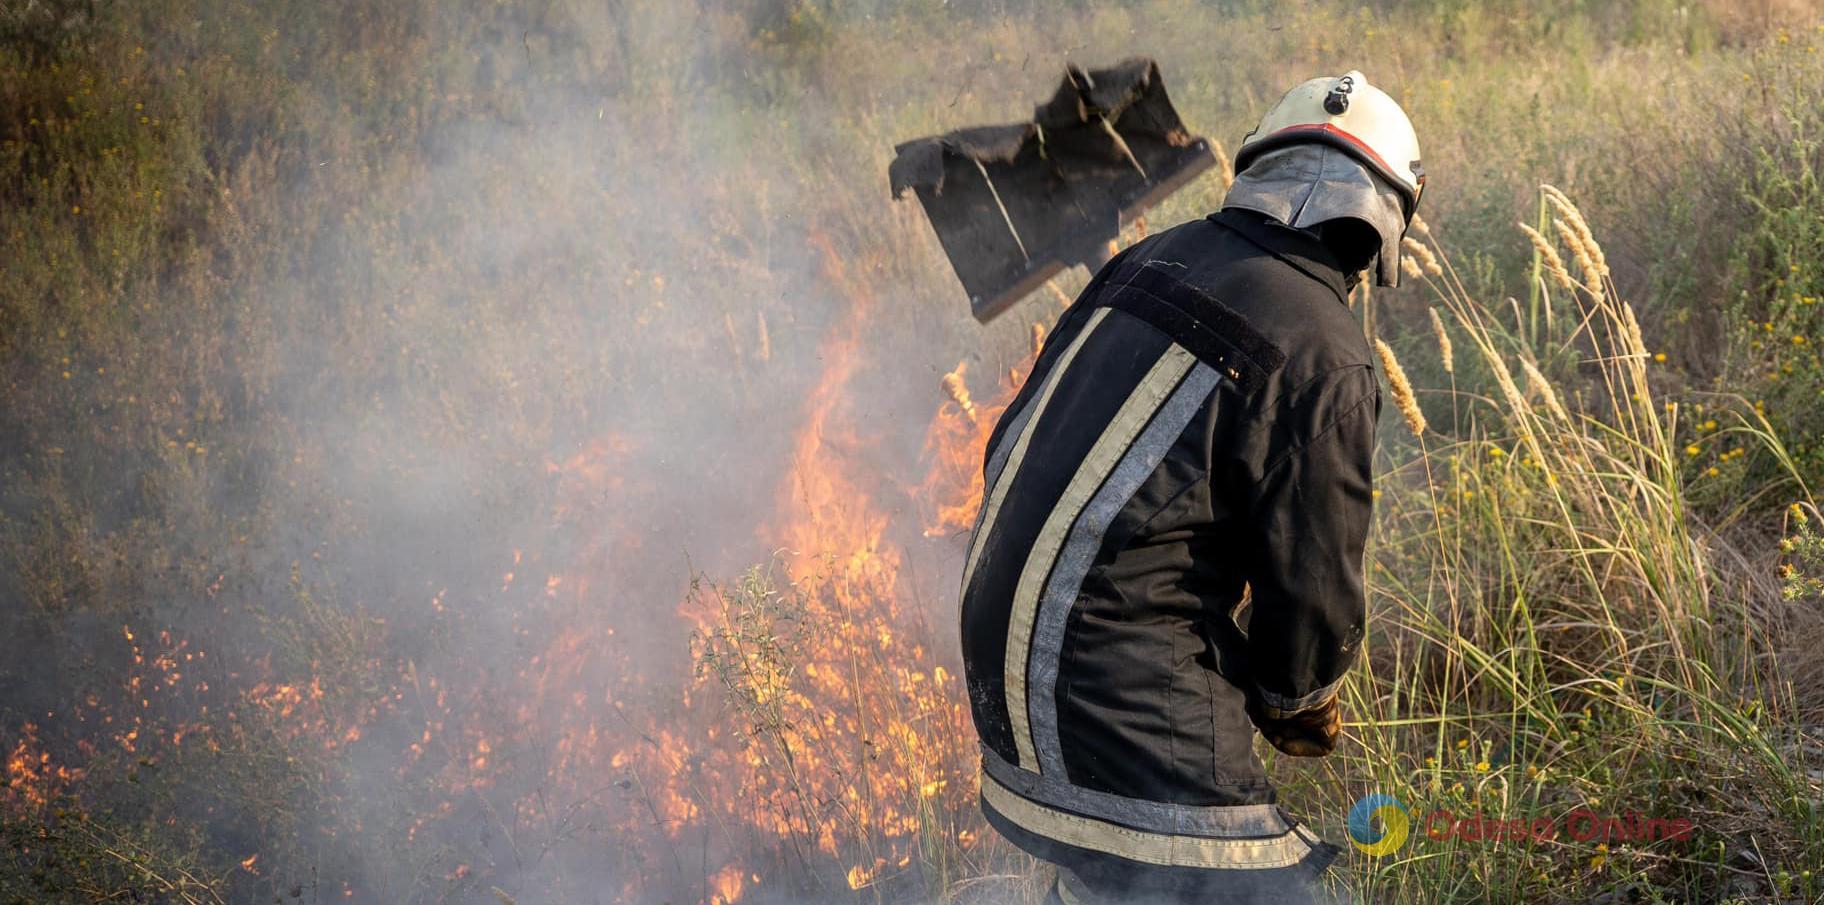 Одесская область продолжает гореть: спасатели опубликовали видео ликвидации пожаров в экосистемах за последние сутки